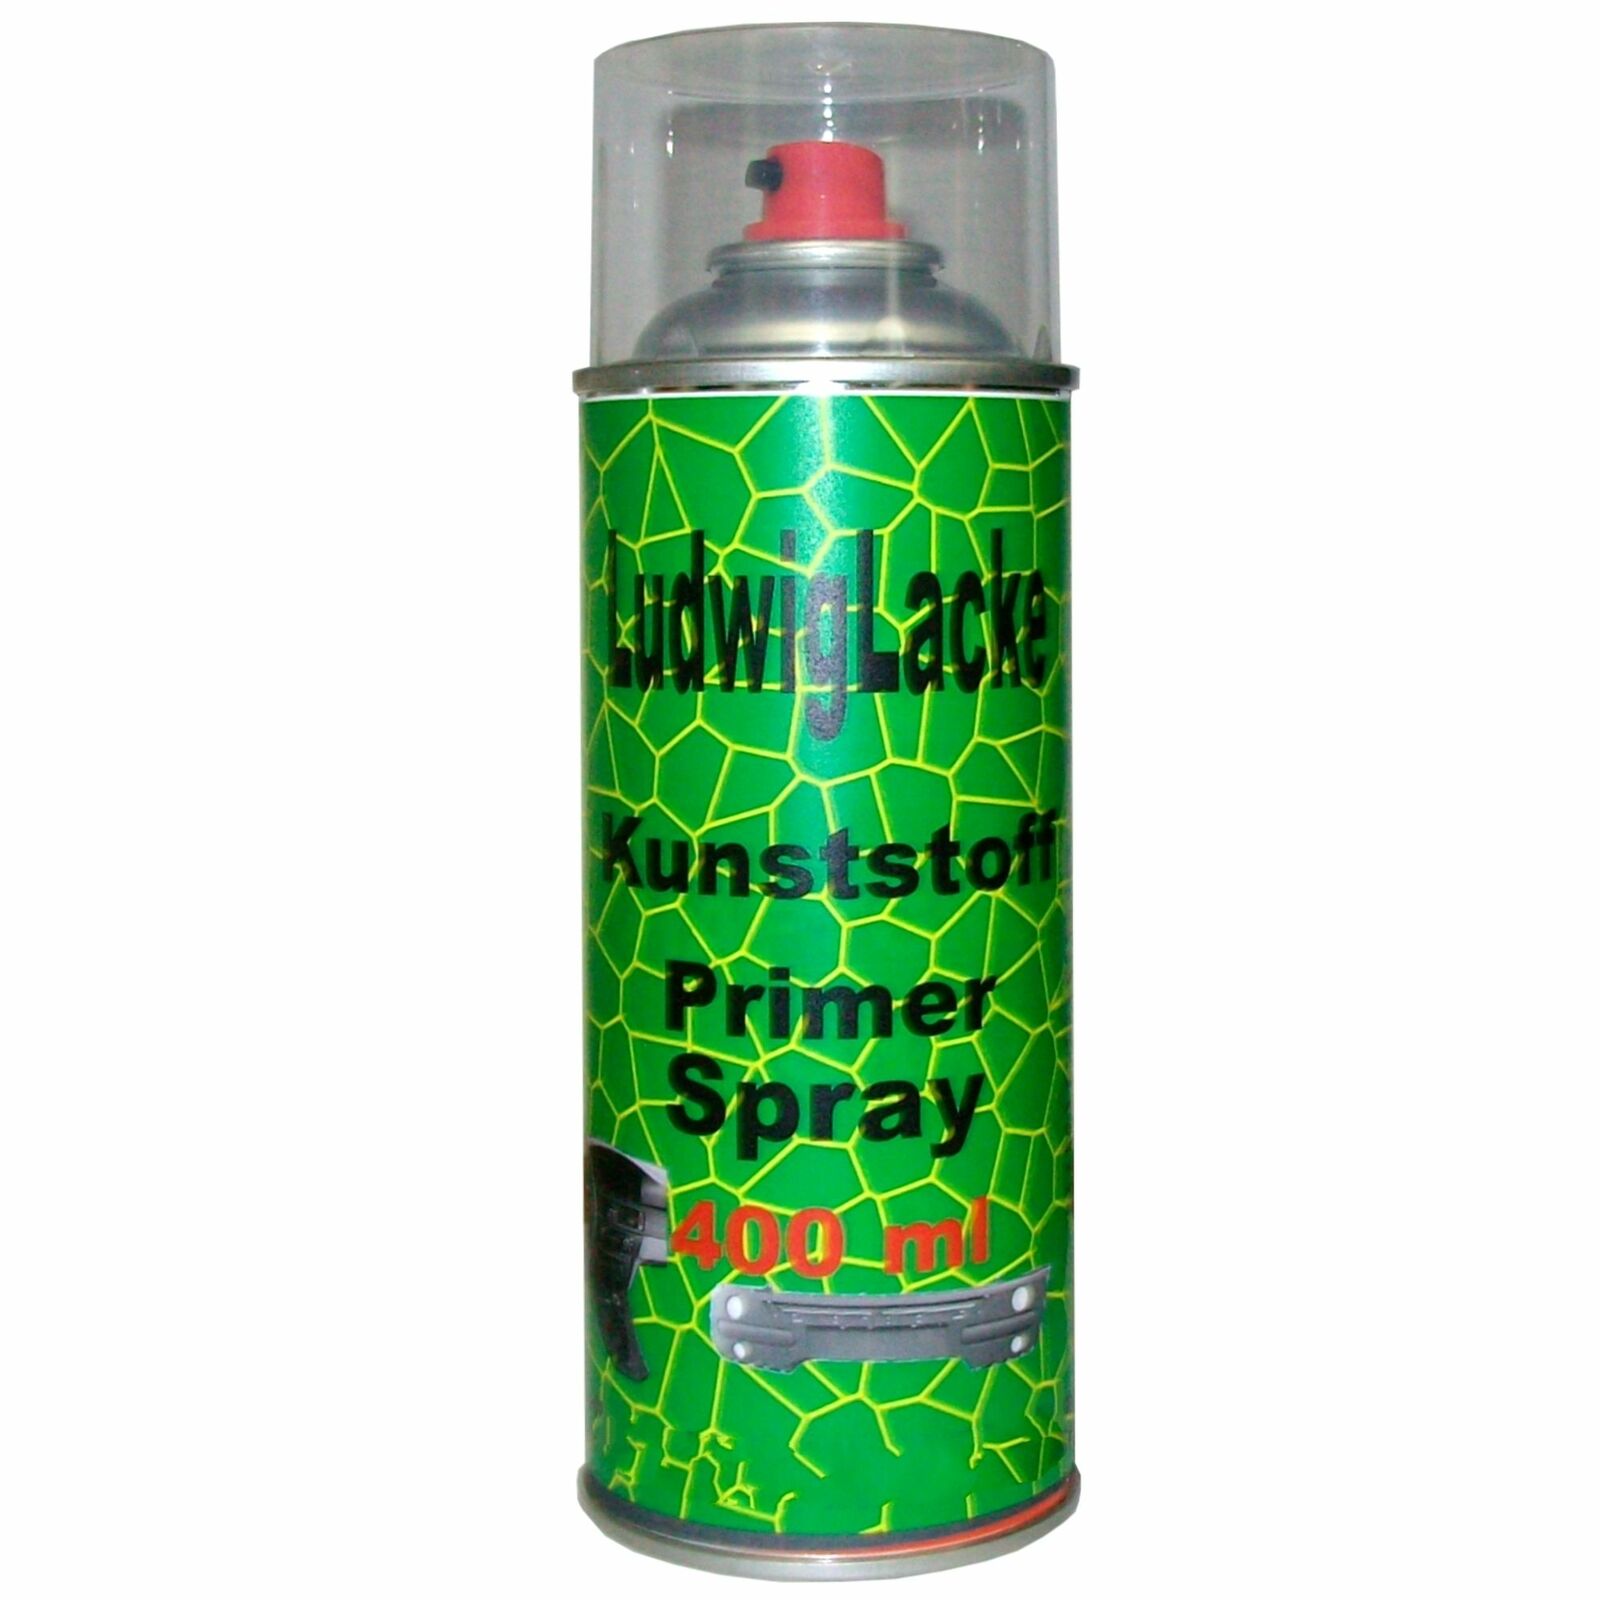 Kunststoffgrundierung Spray 400ml Kunststoff Haftvermittler Kunststoffprimer